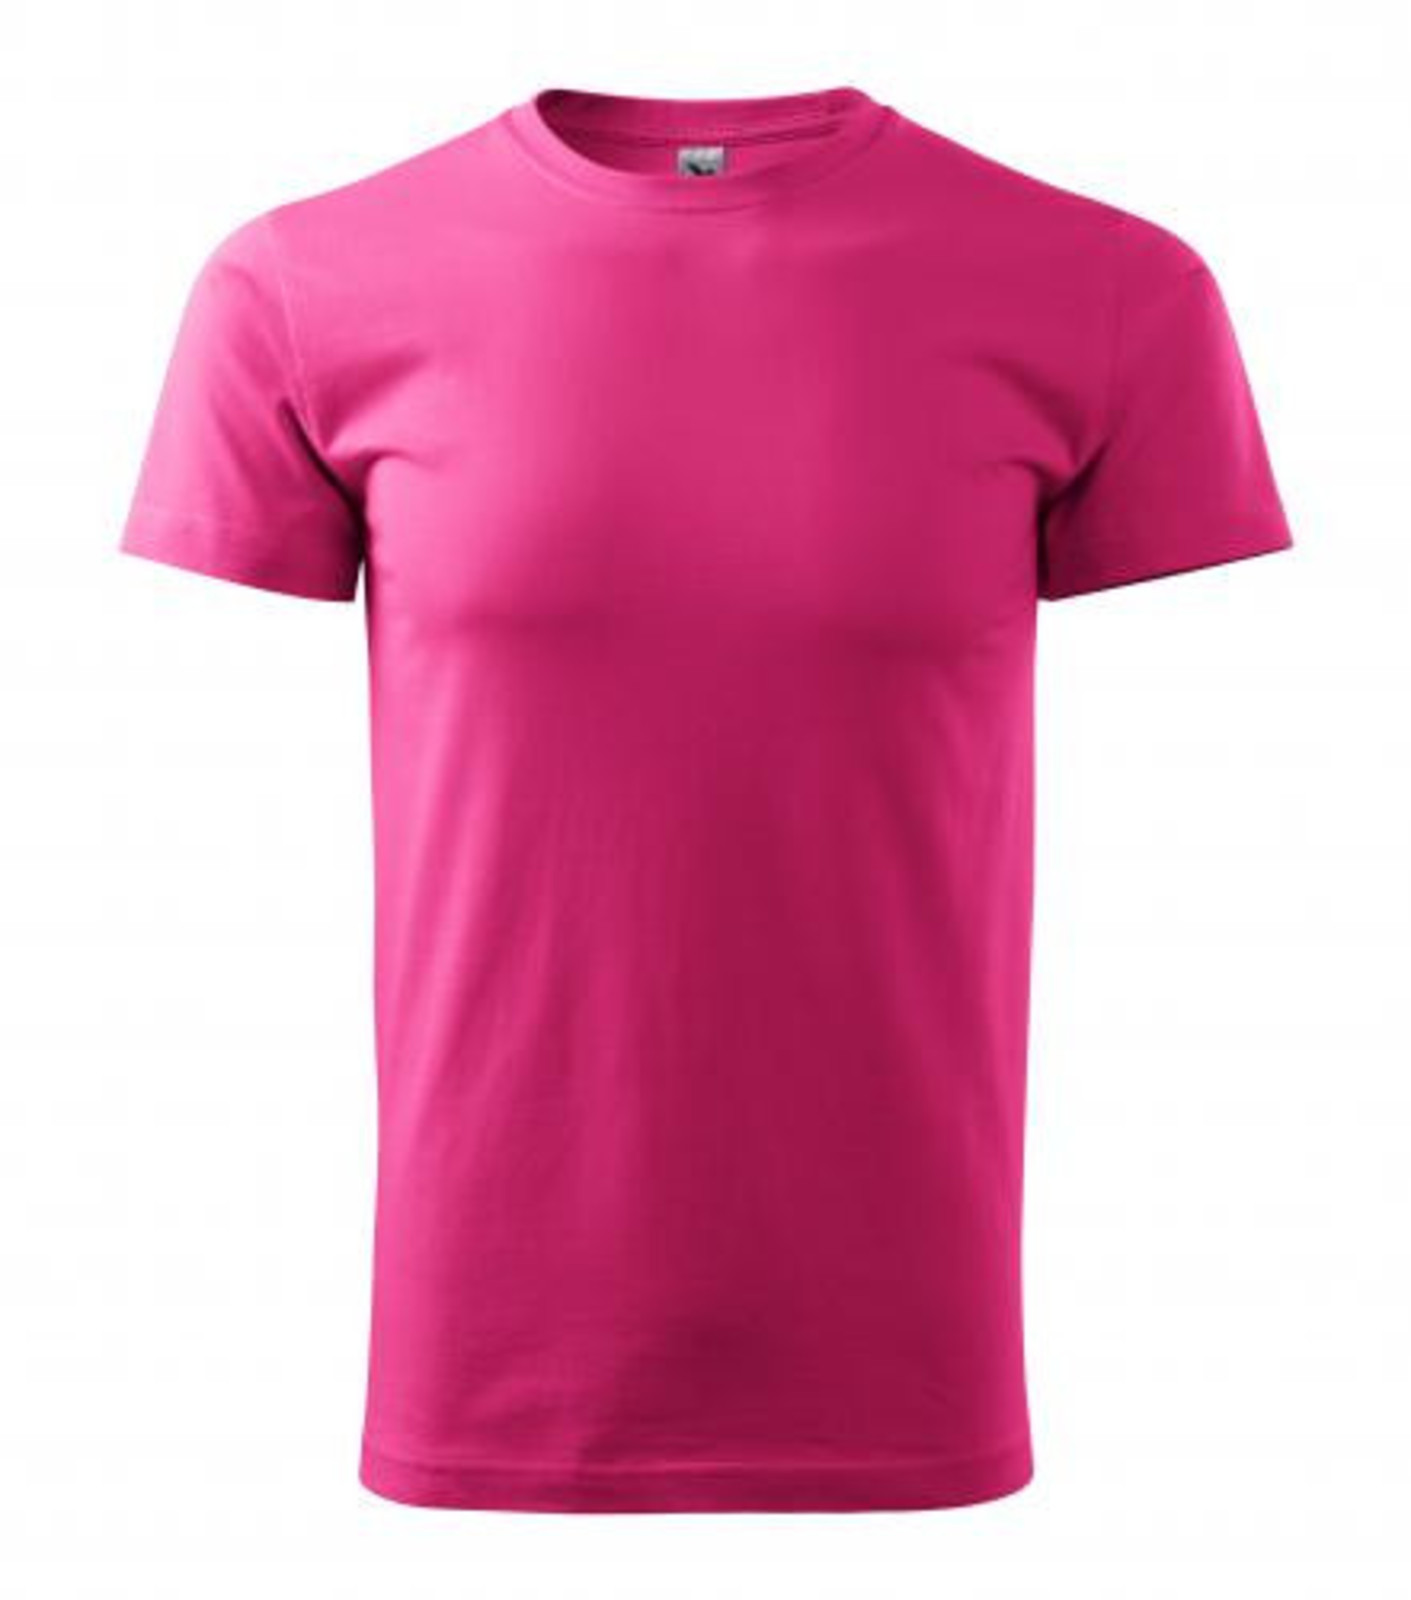 Unisex tričko Malfini Heavy New 137 - veľkosť: XL, farba: purpurová